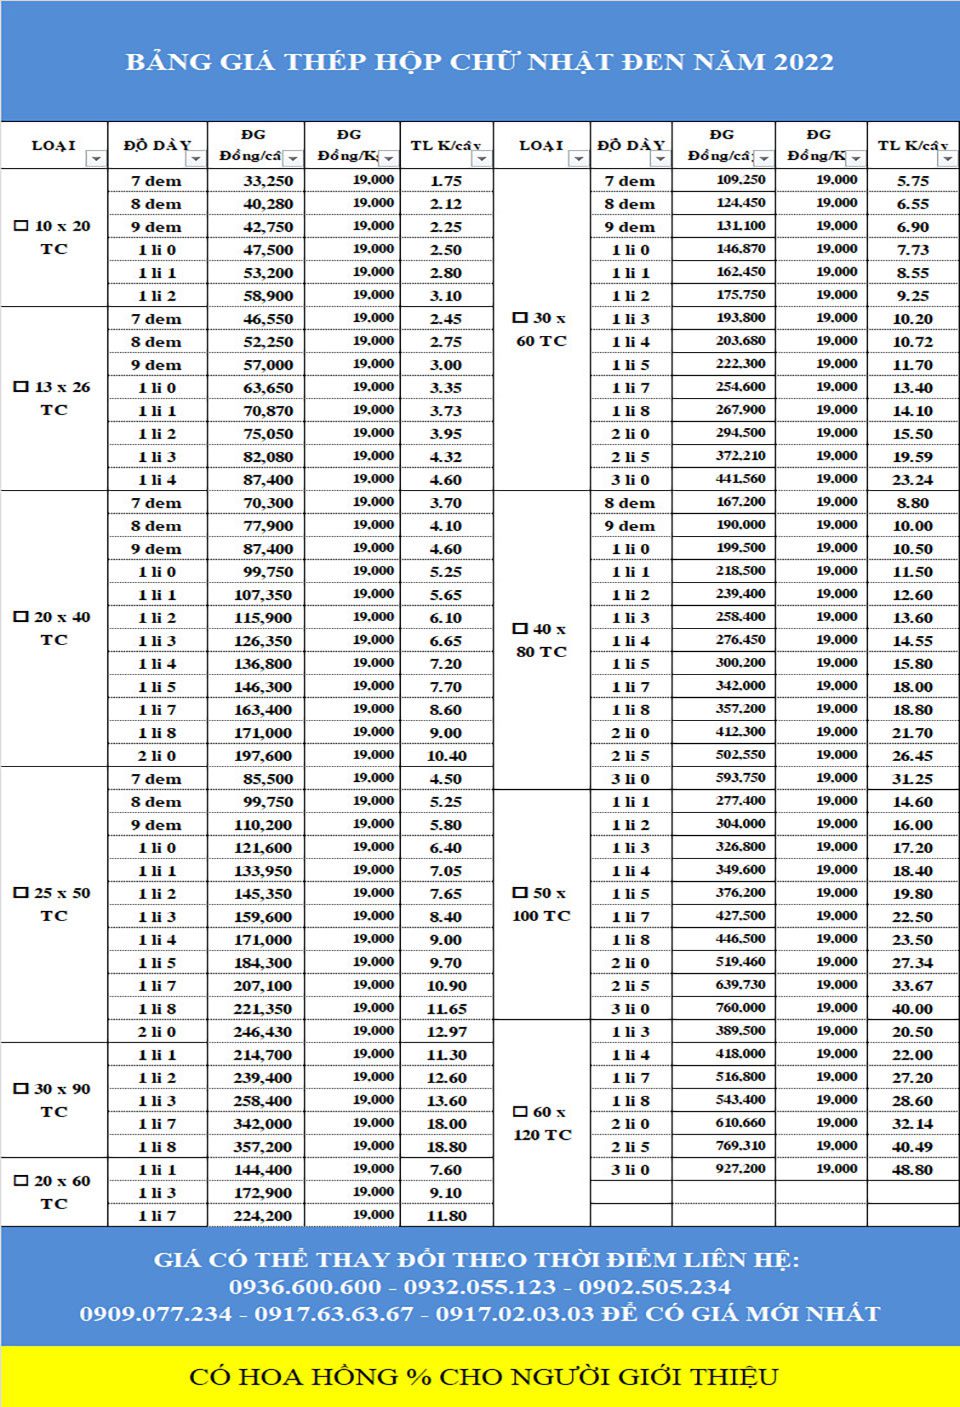 Bảng giá thép hộp mới nhất năm 2022 của thép Mạnh Tiến Phát